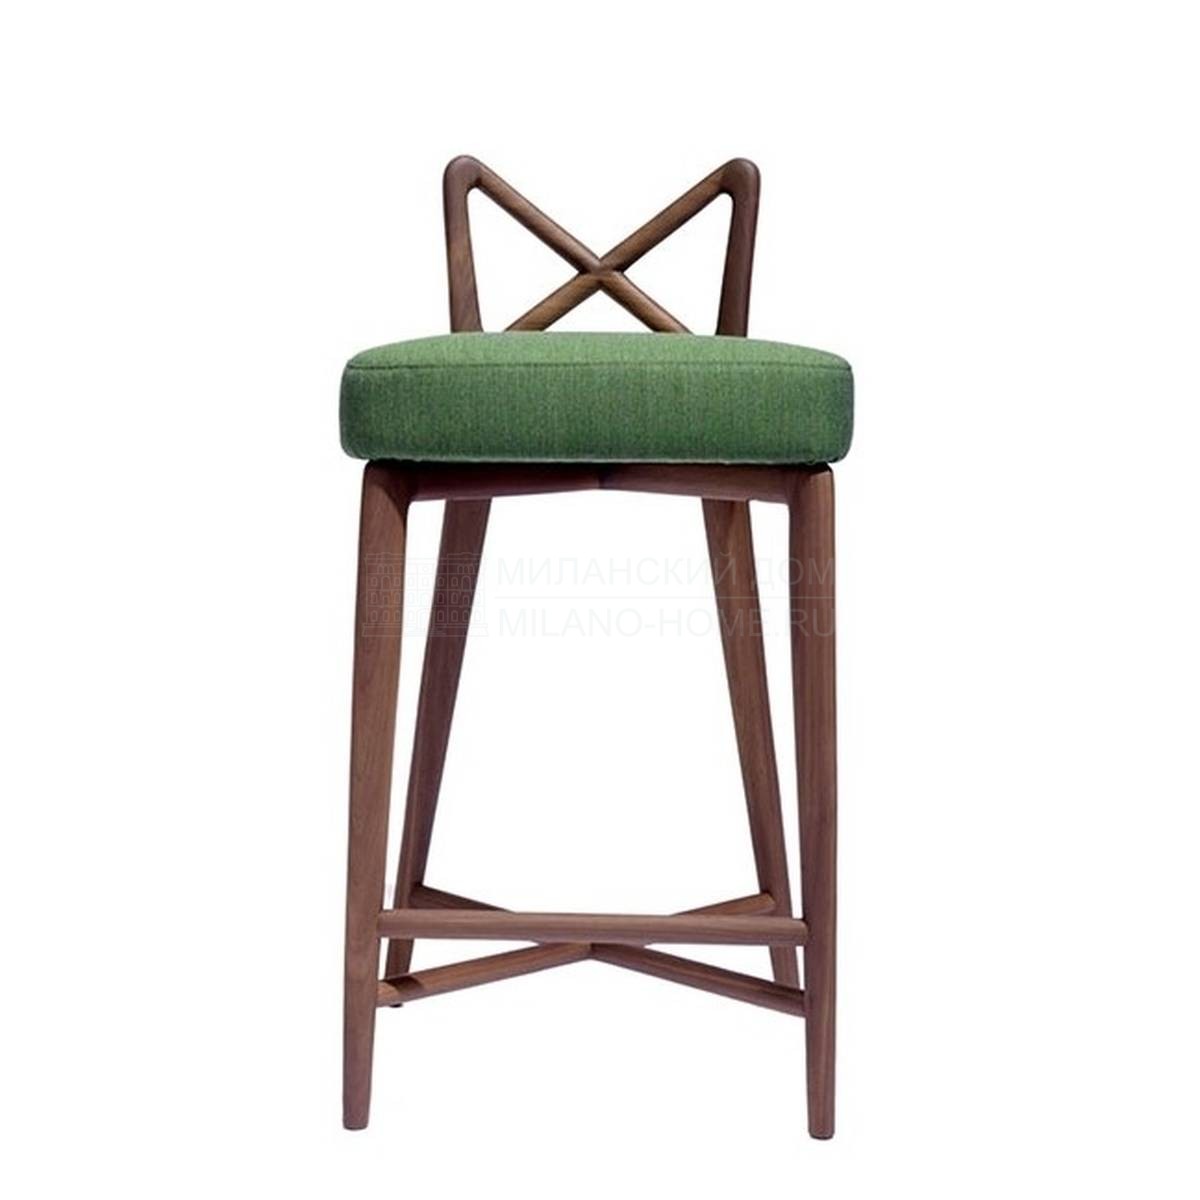 Полубарный стул Shanghai Bar Chair из Италии фабрики SAWAYA & MORONI